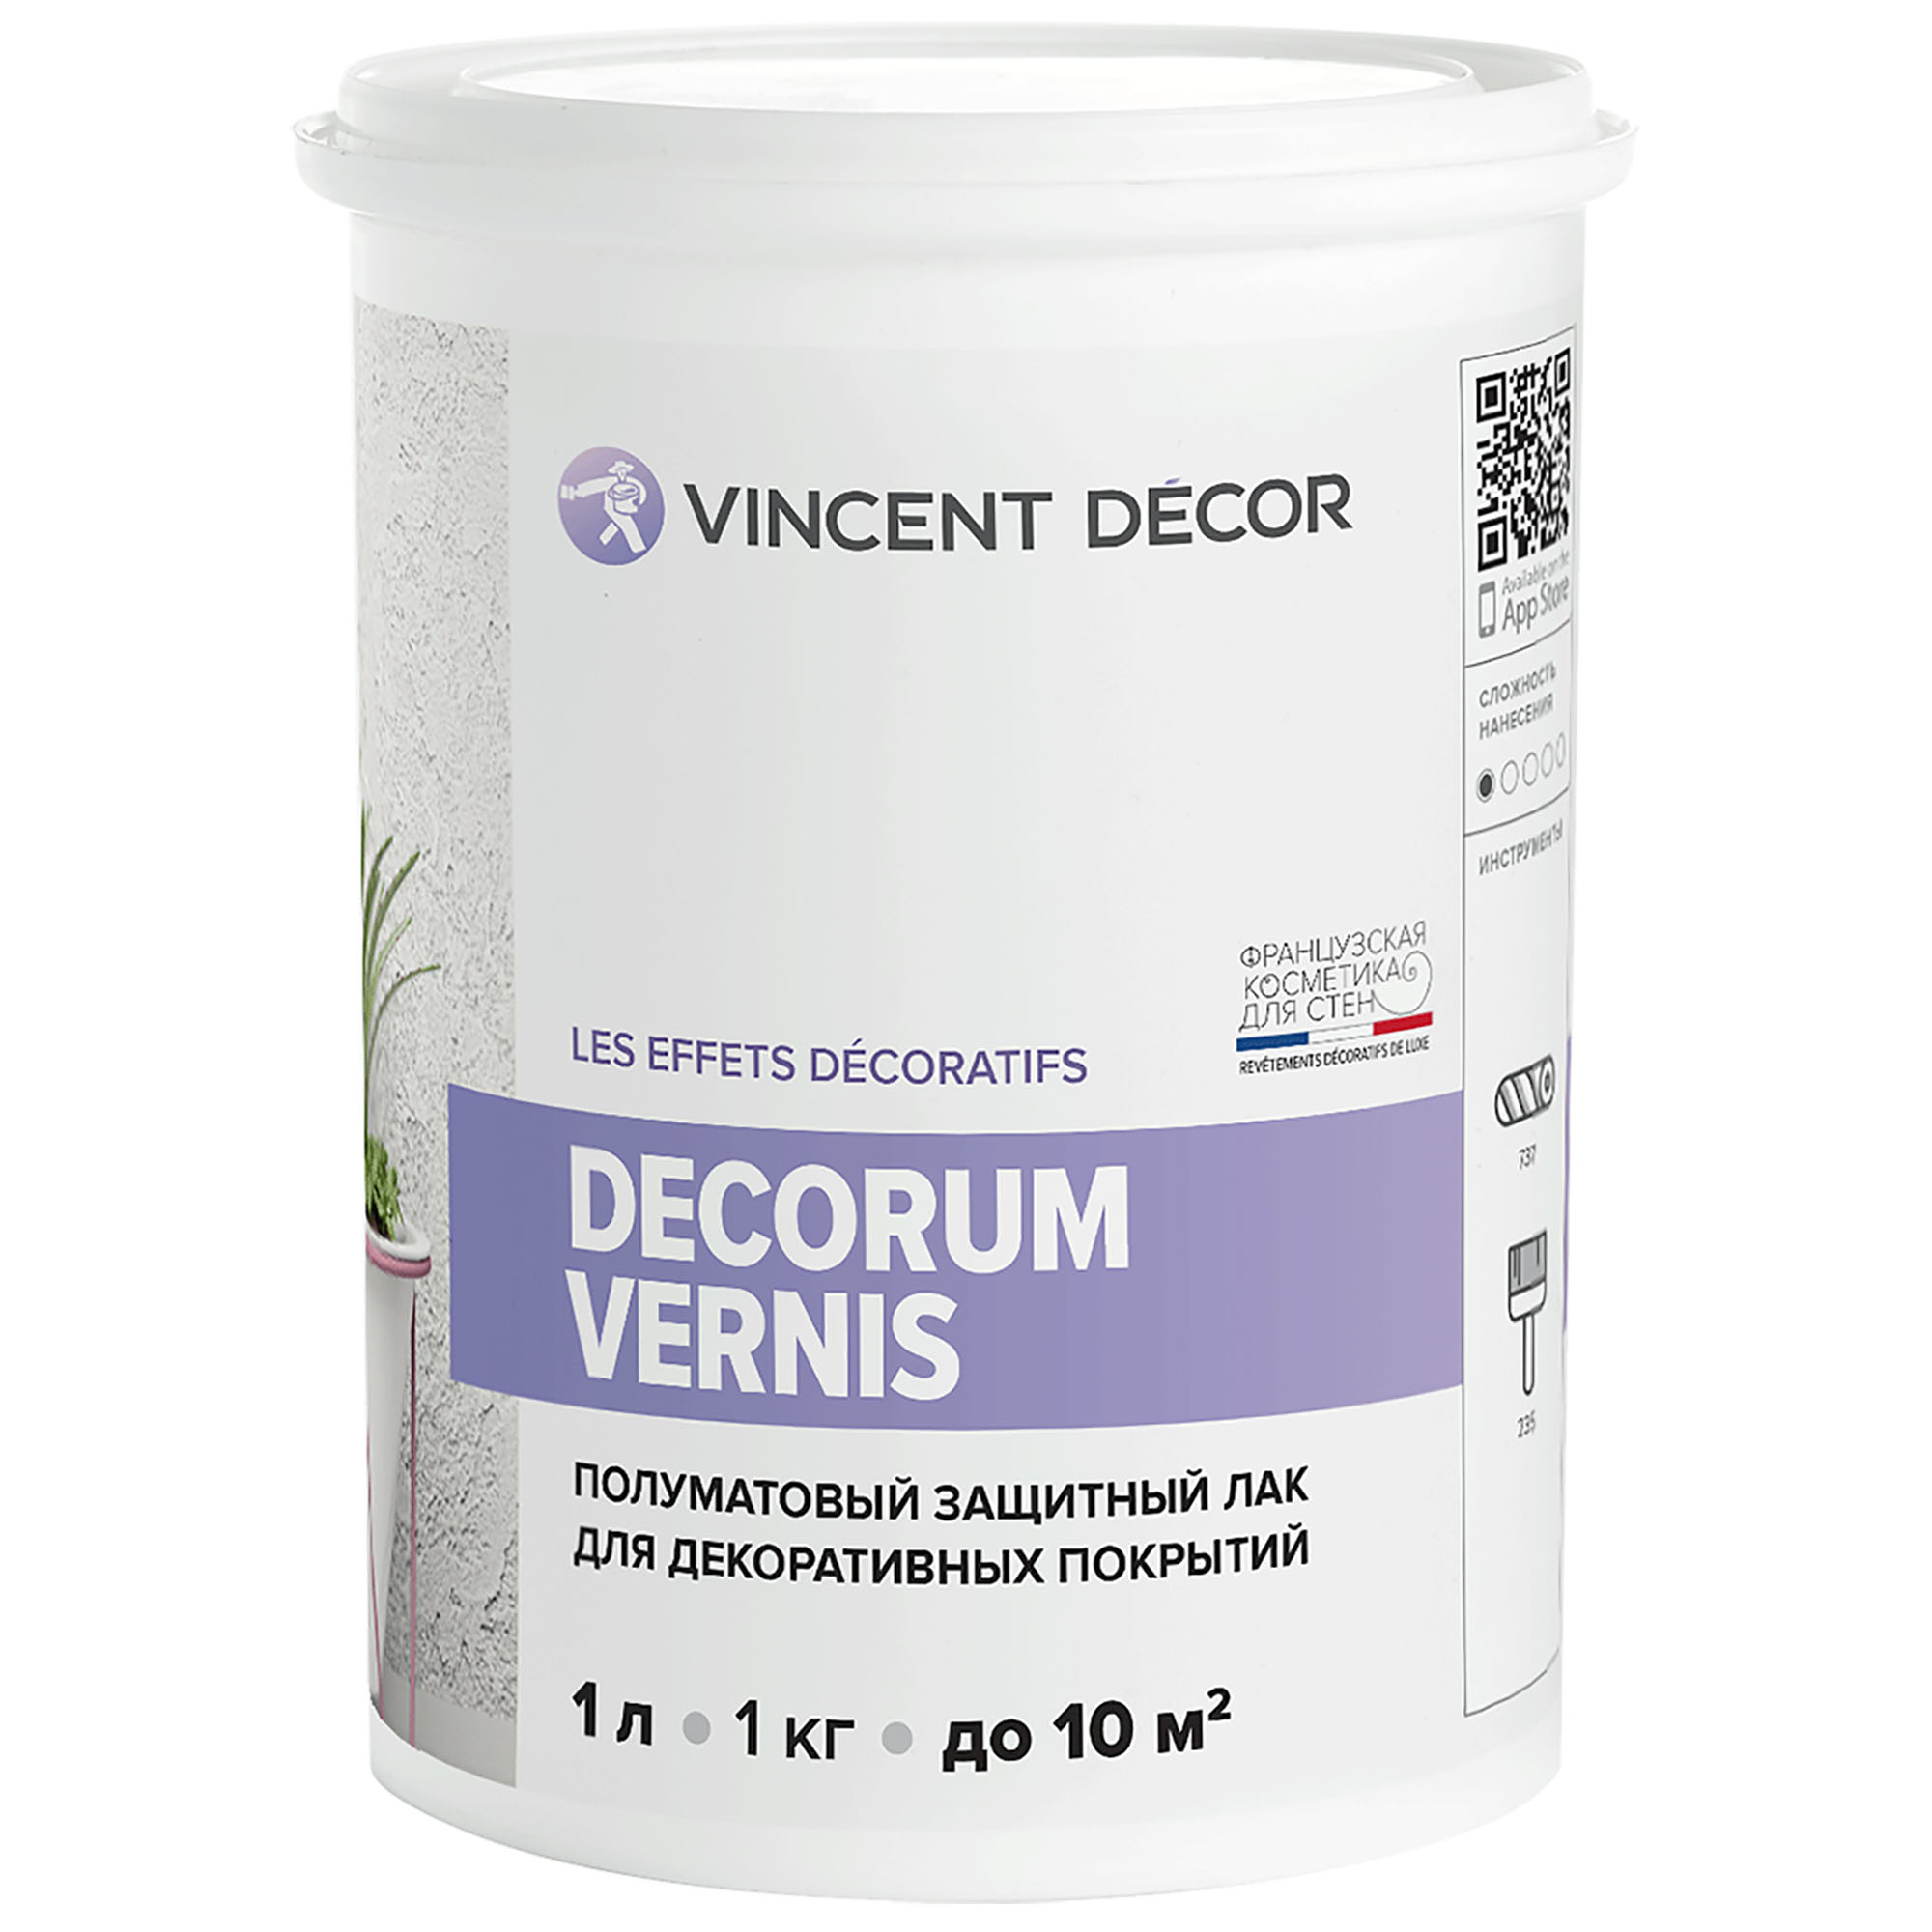 Лак защитный для декоративных покрытий Vincent Decor Decorum Vernis полуматовый 1 л грунтовка для декоративных покрытий vincent decor sous couche 1 л